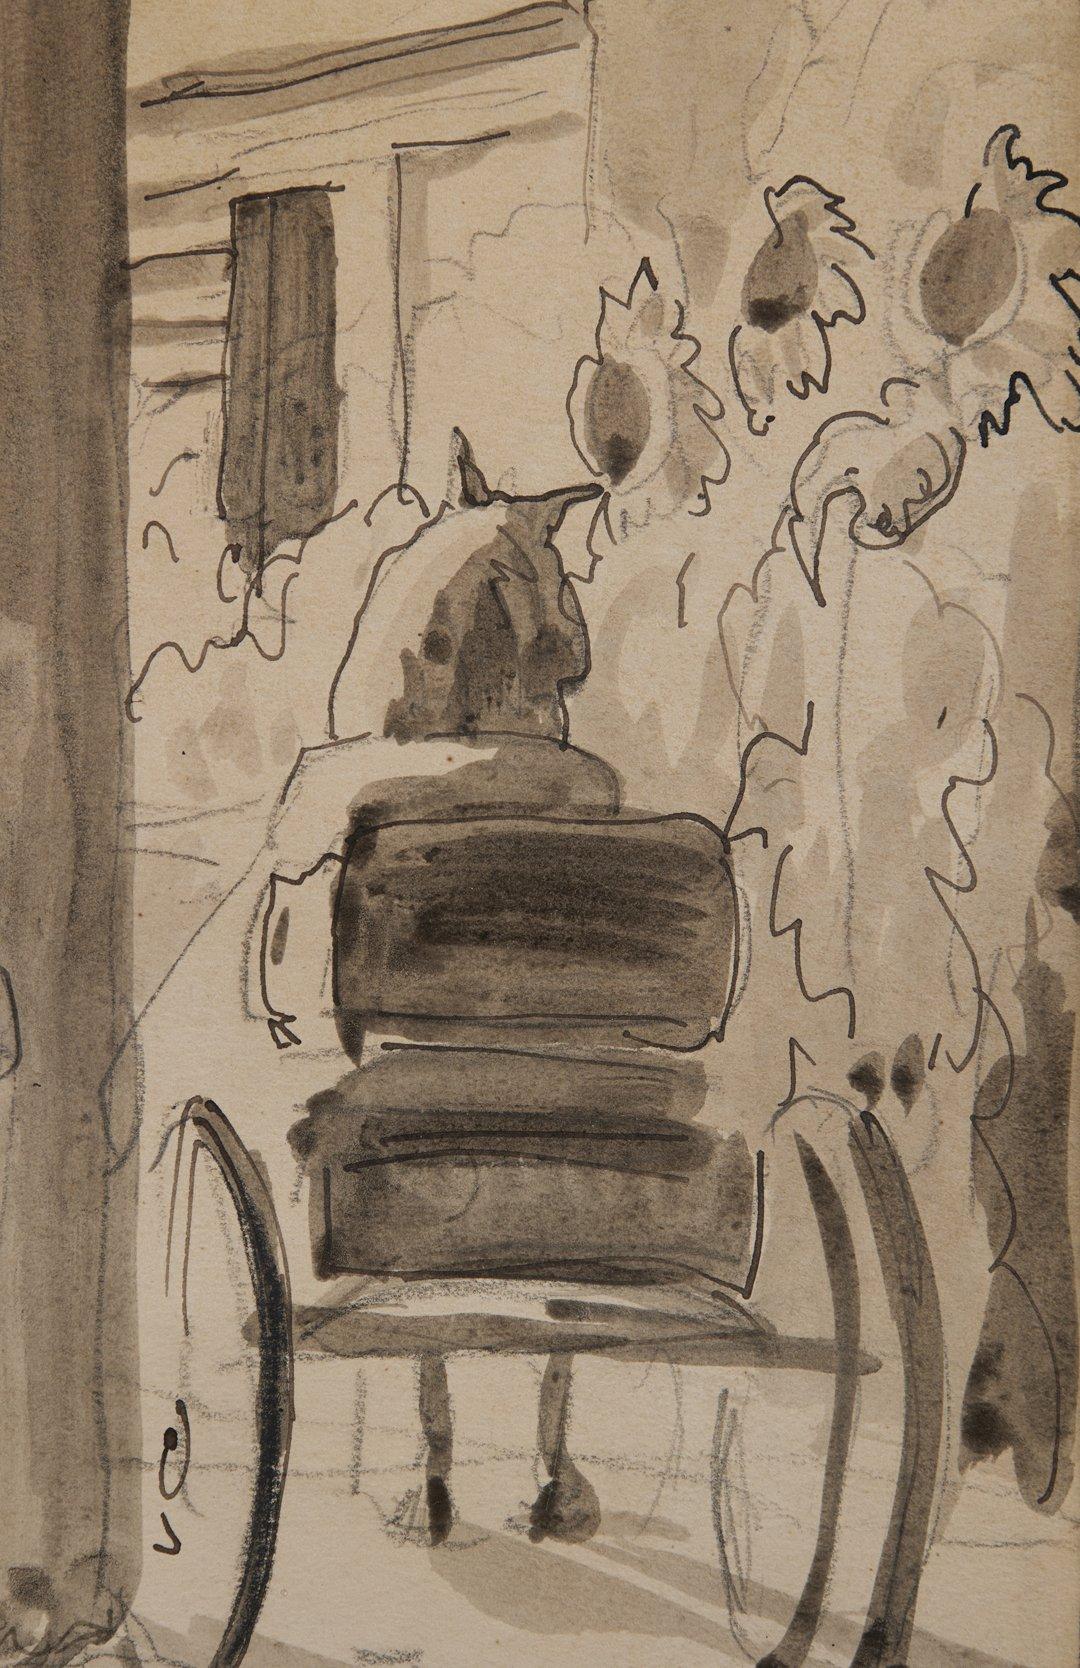 Village Scene, Zeichnung auf Papier des frühen 20. Jahrhunderts, Künstler der Cleveland School (Amerikanischer Impressionismus), Art, von Charles E. Burchfield